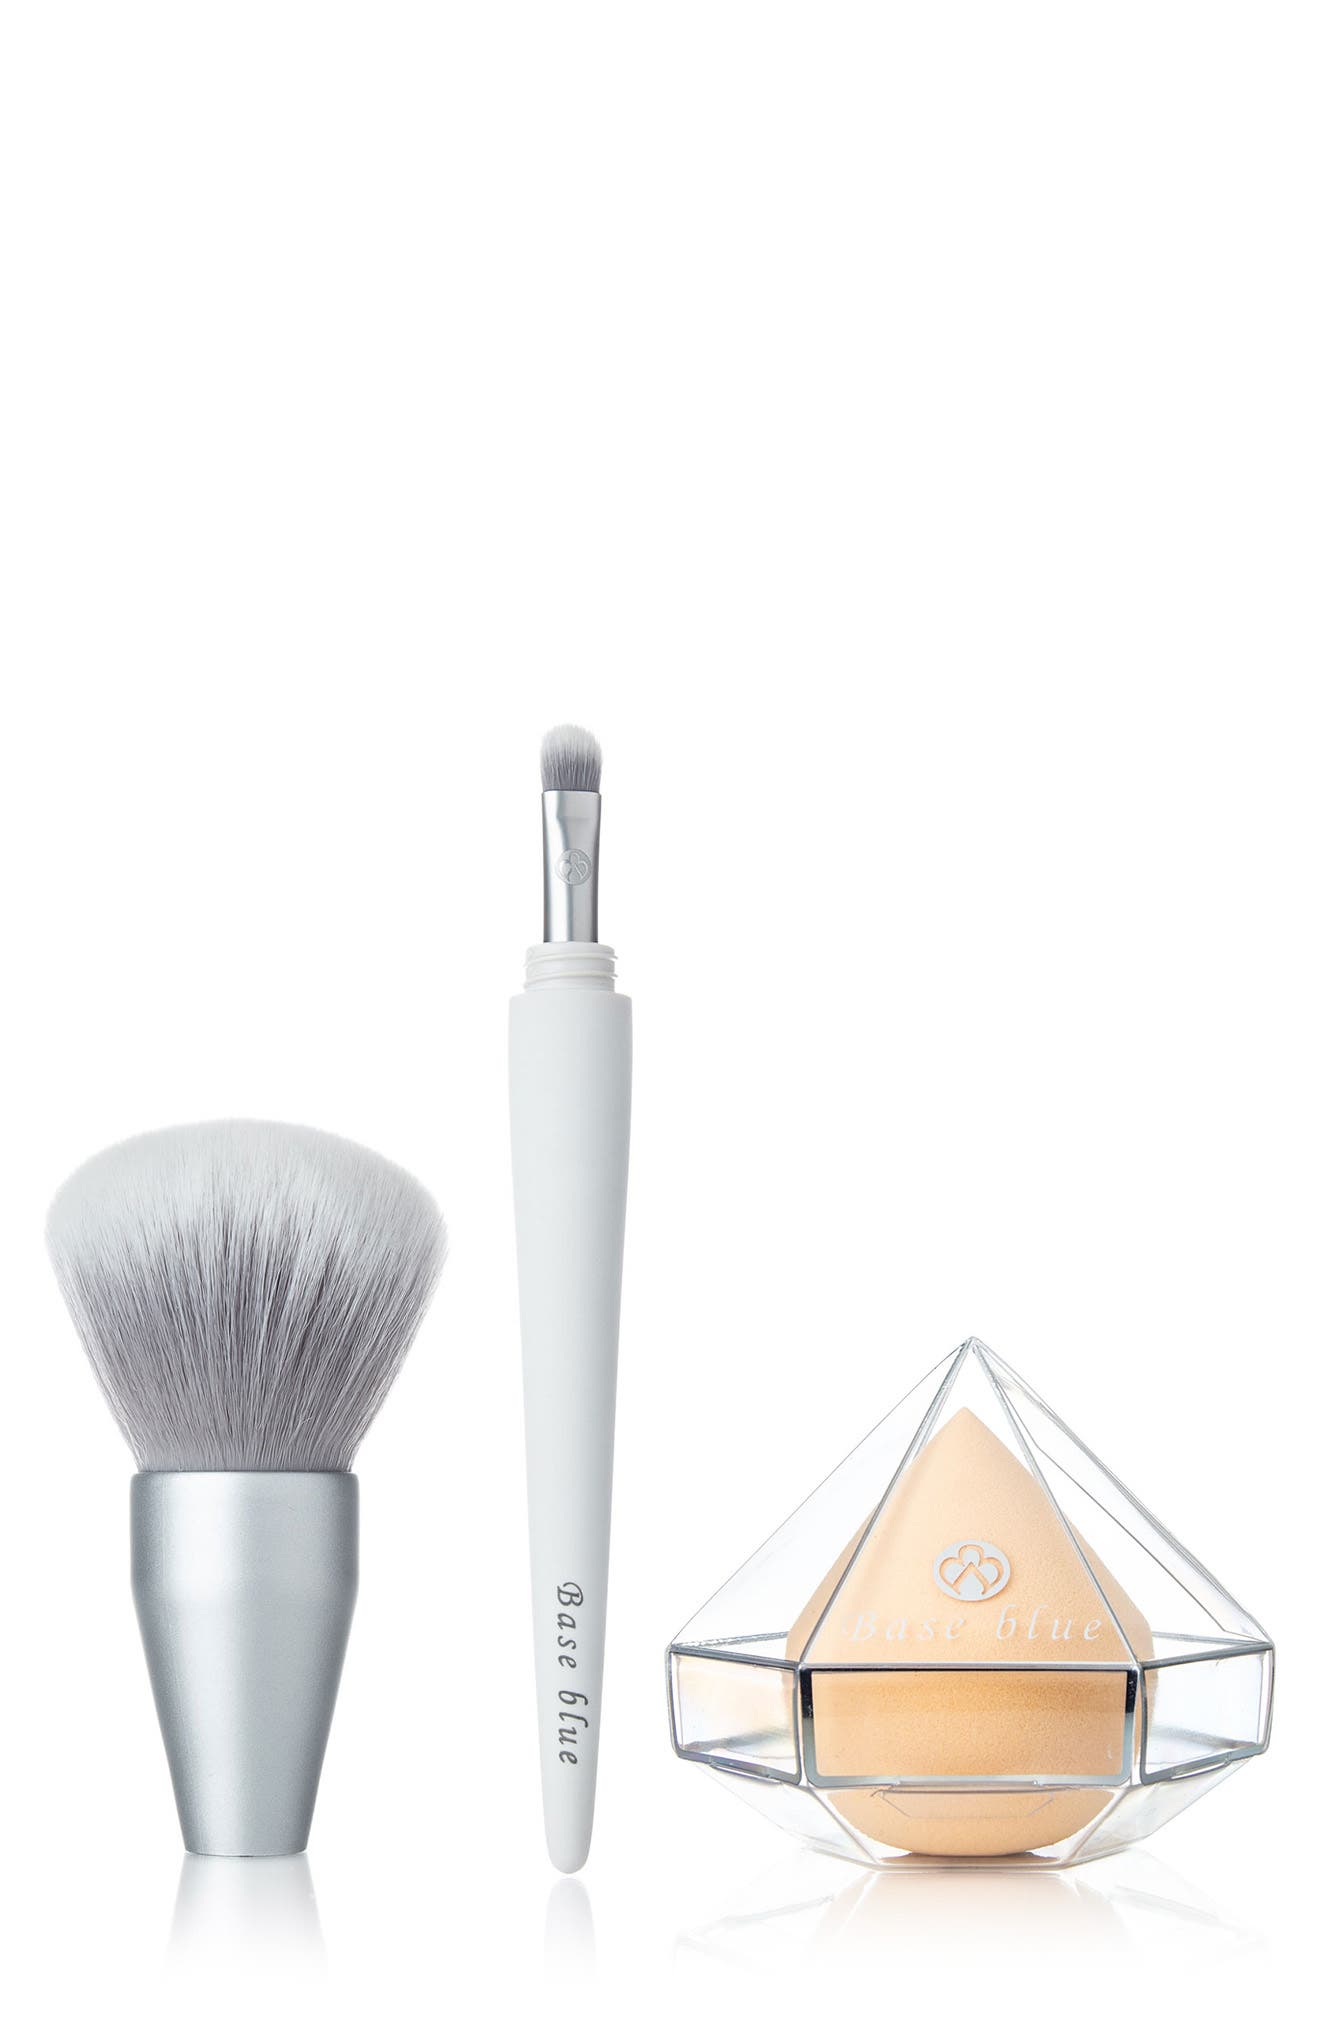 Yuka Skincare 2-in-1 Eyeshadow & Powder Brush "a" W/ Airsponge Makeup Blender